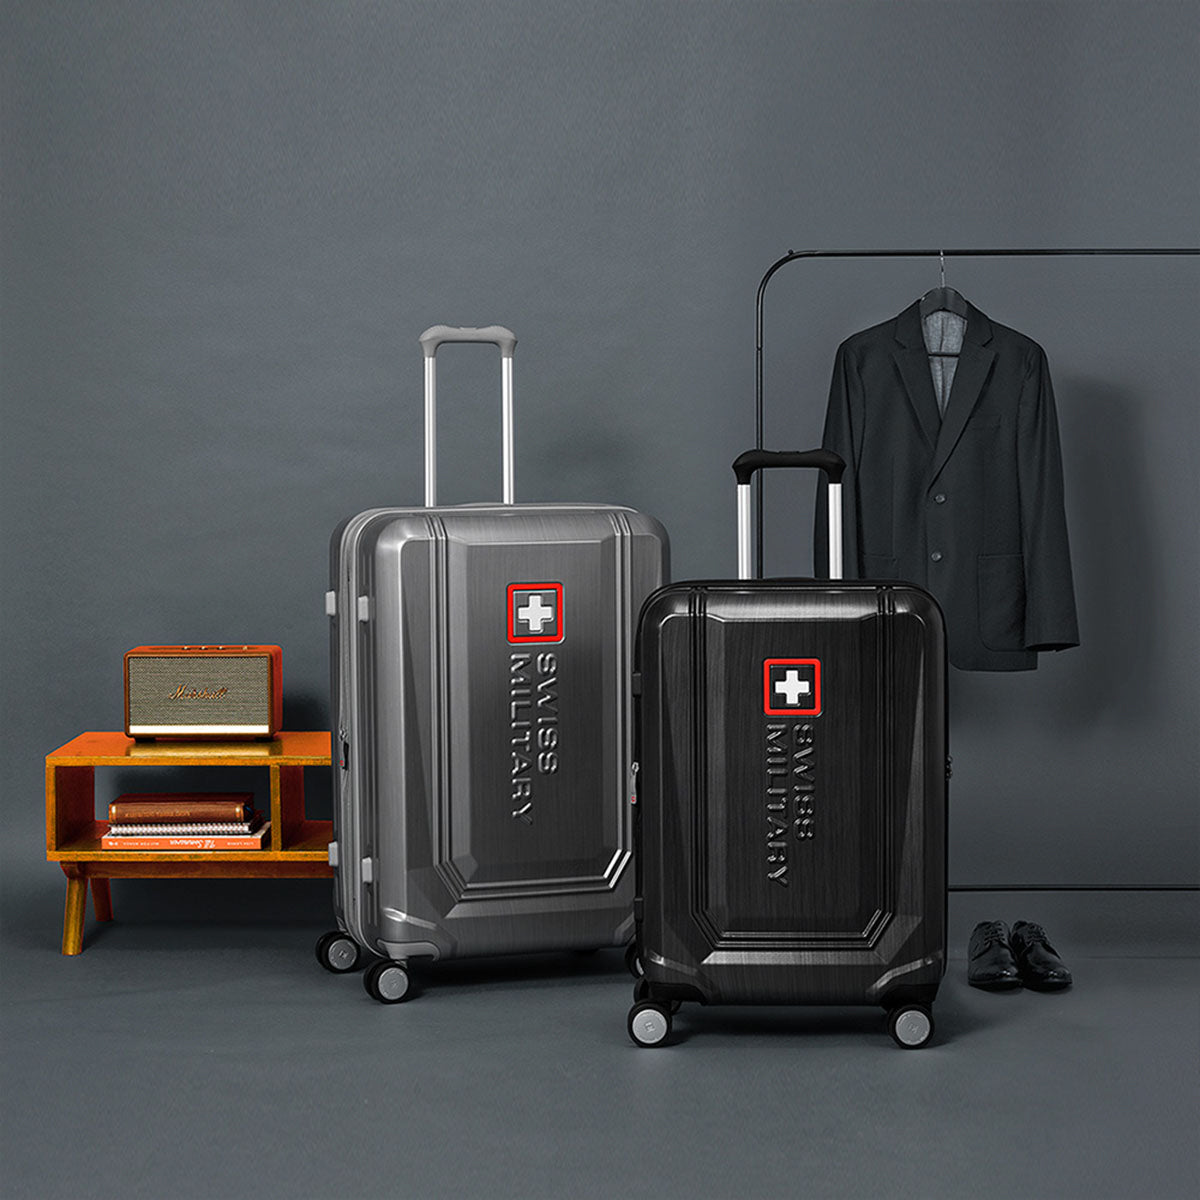 スーツケース 大型 Lサイズ 一週間以上 74cm BROQUEL(ブロッケル) メタリックシルバー